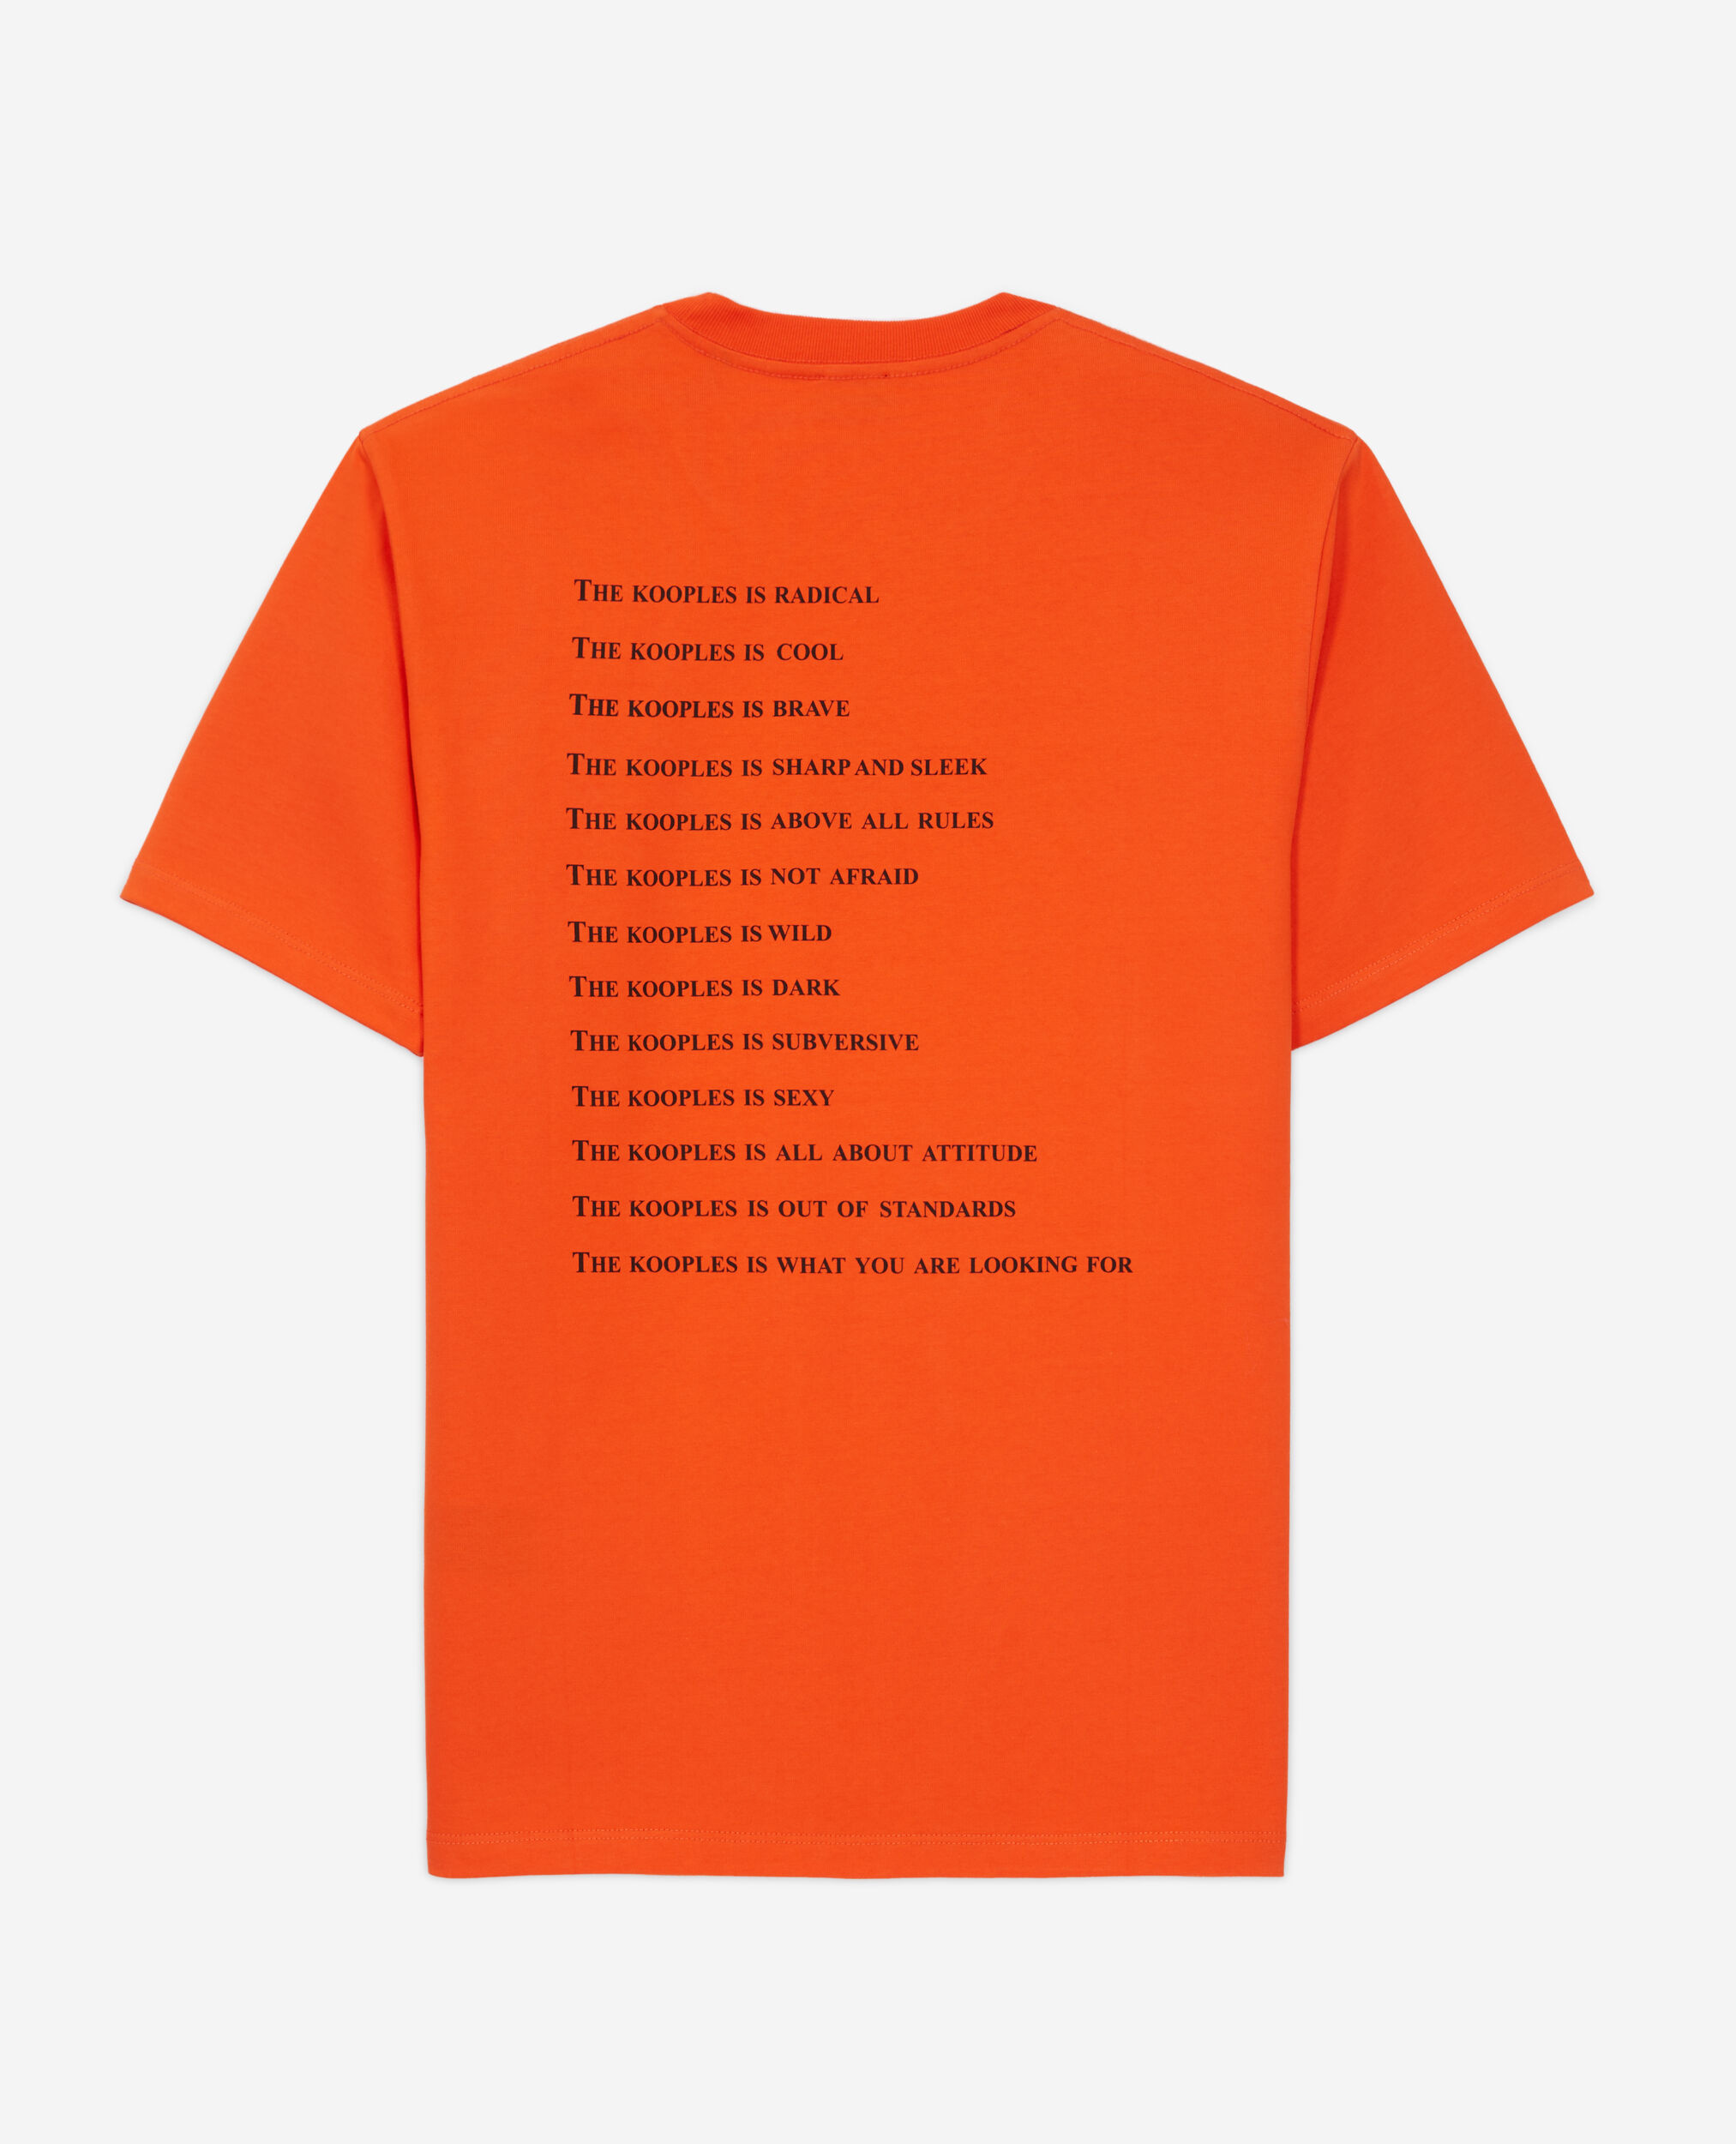 Camiseta What is naranja para hombre, PUMPKIN, hi-res image number null